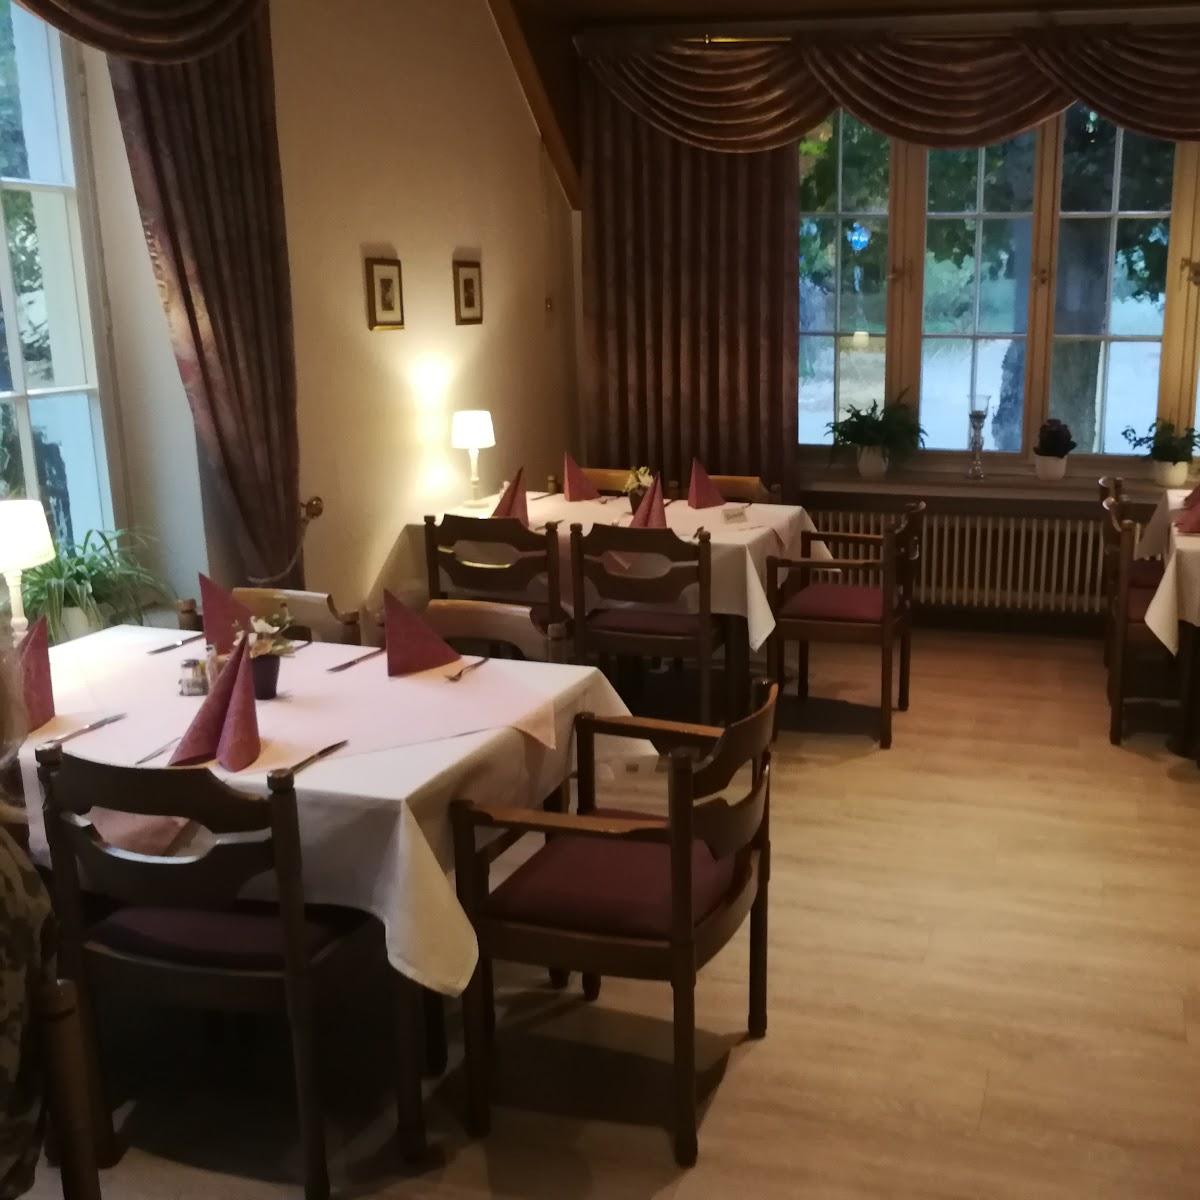 Restaurant "Gaststätte Rickmeyer" in Bad Salzuflen